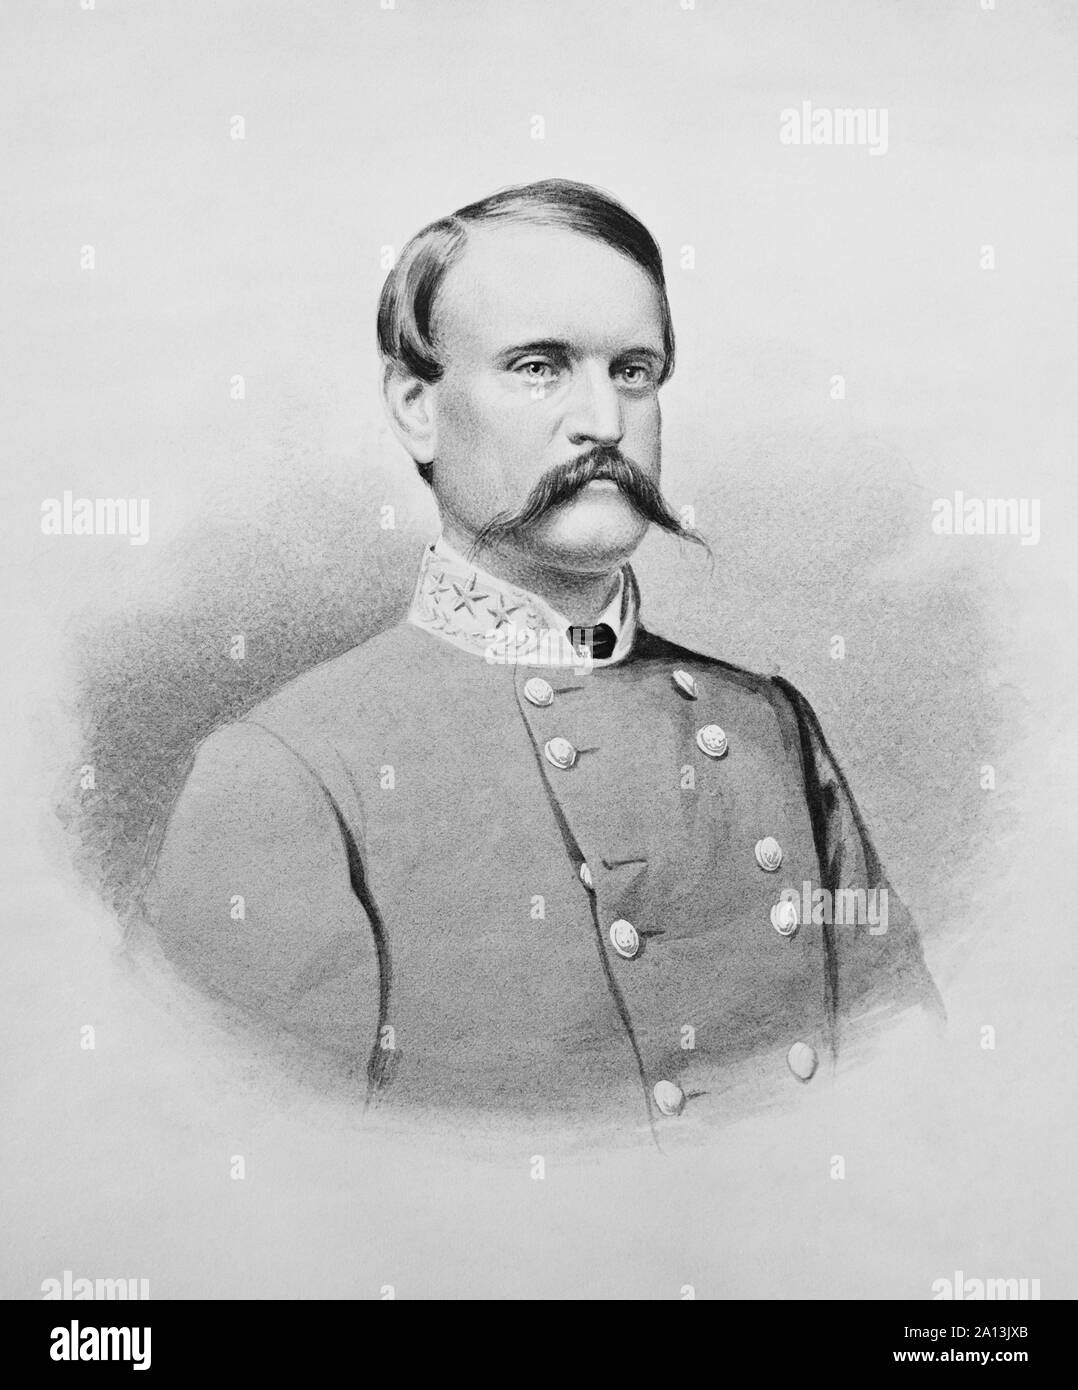 Brustbild Der konföderierte General John breckinridge. Stockfoto